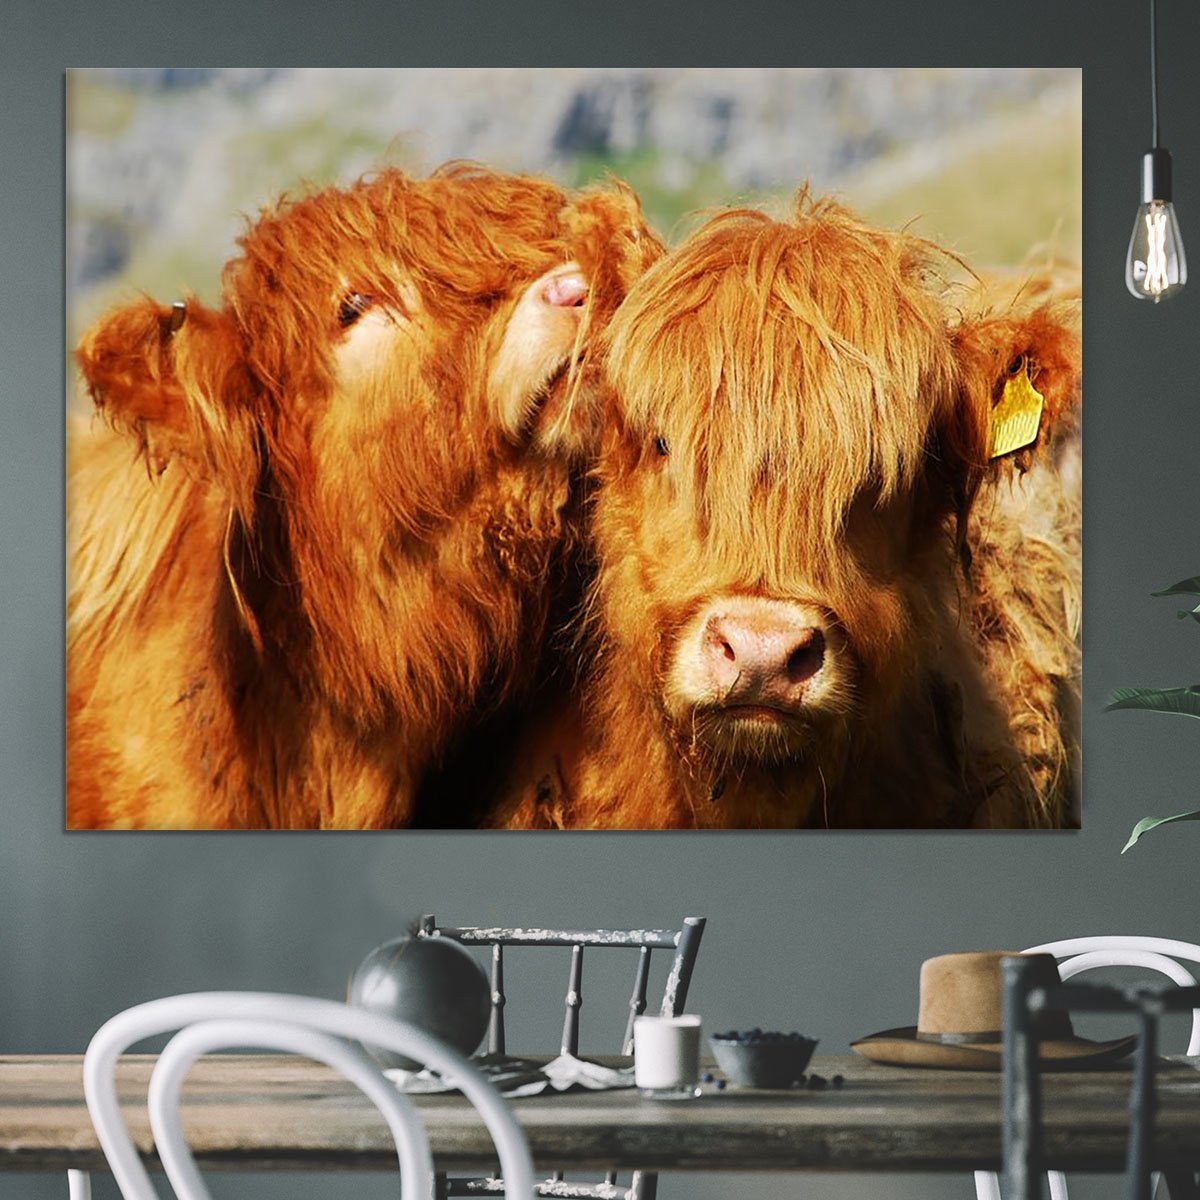 Farm cows Canvas Print or Poster